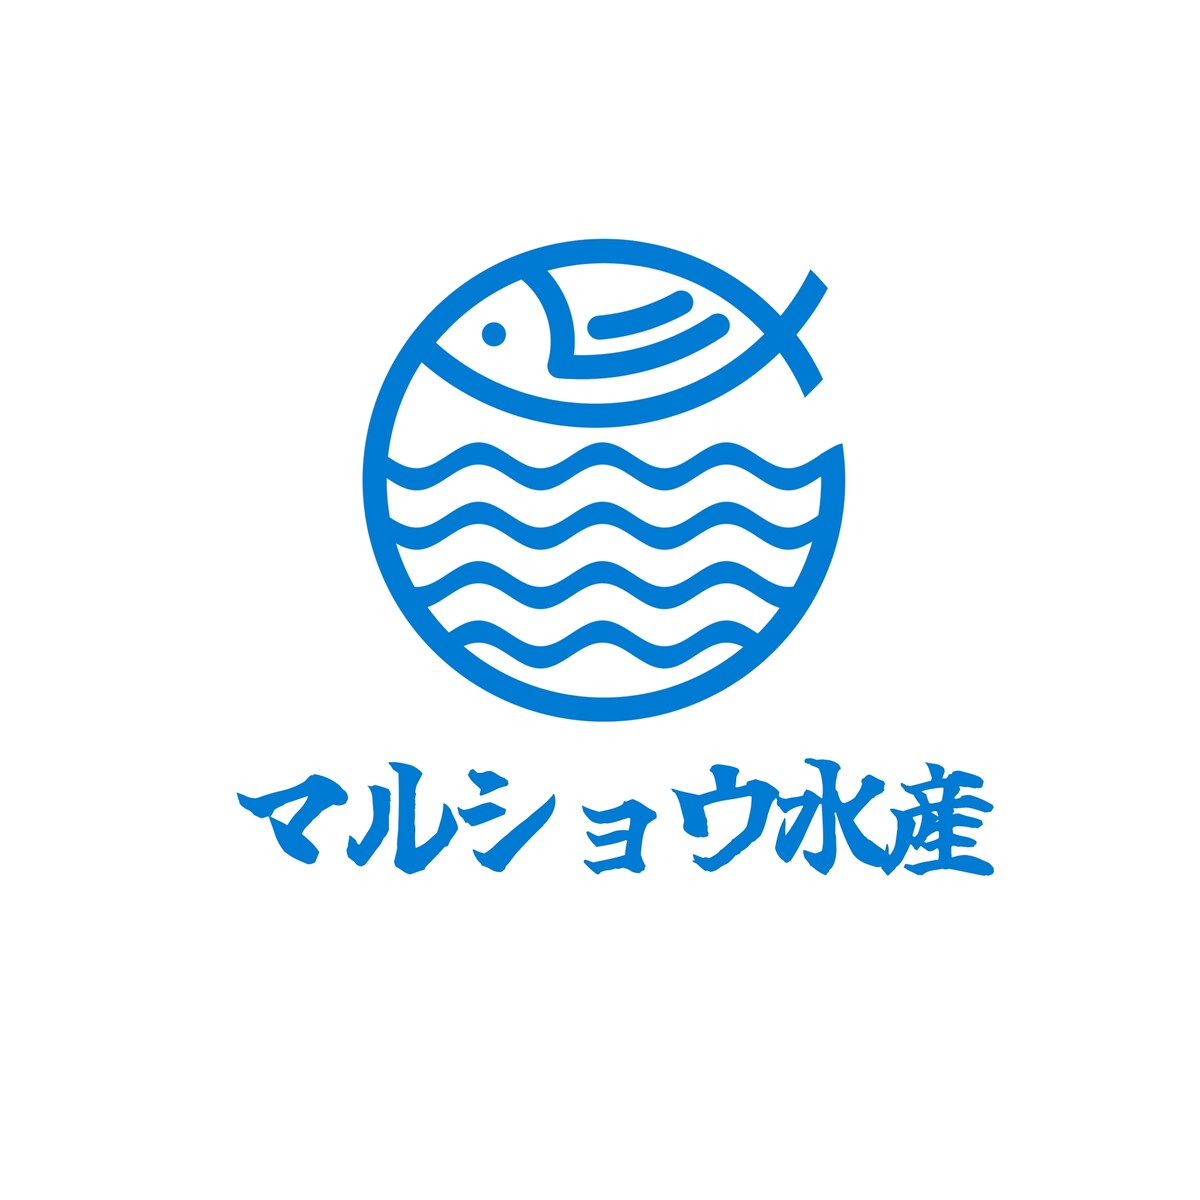 水産会社のロゴデザイン